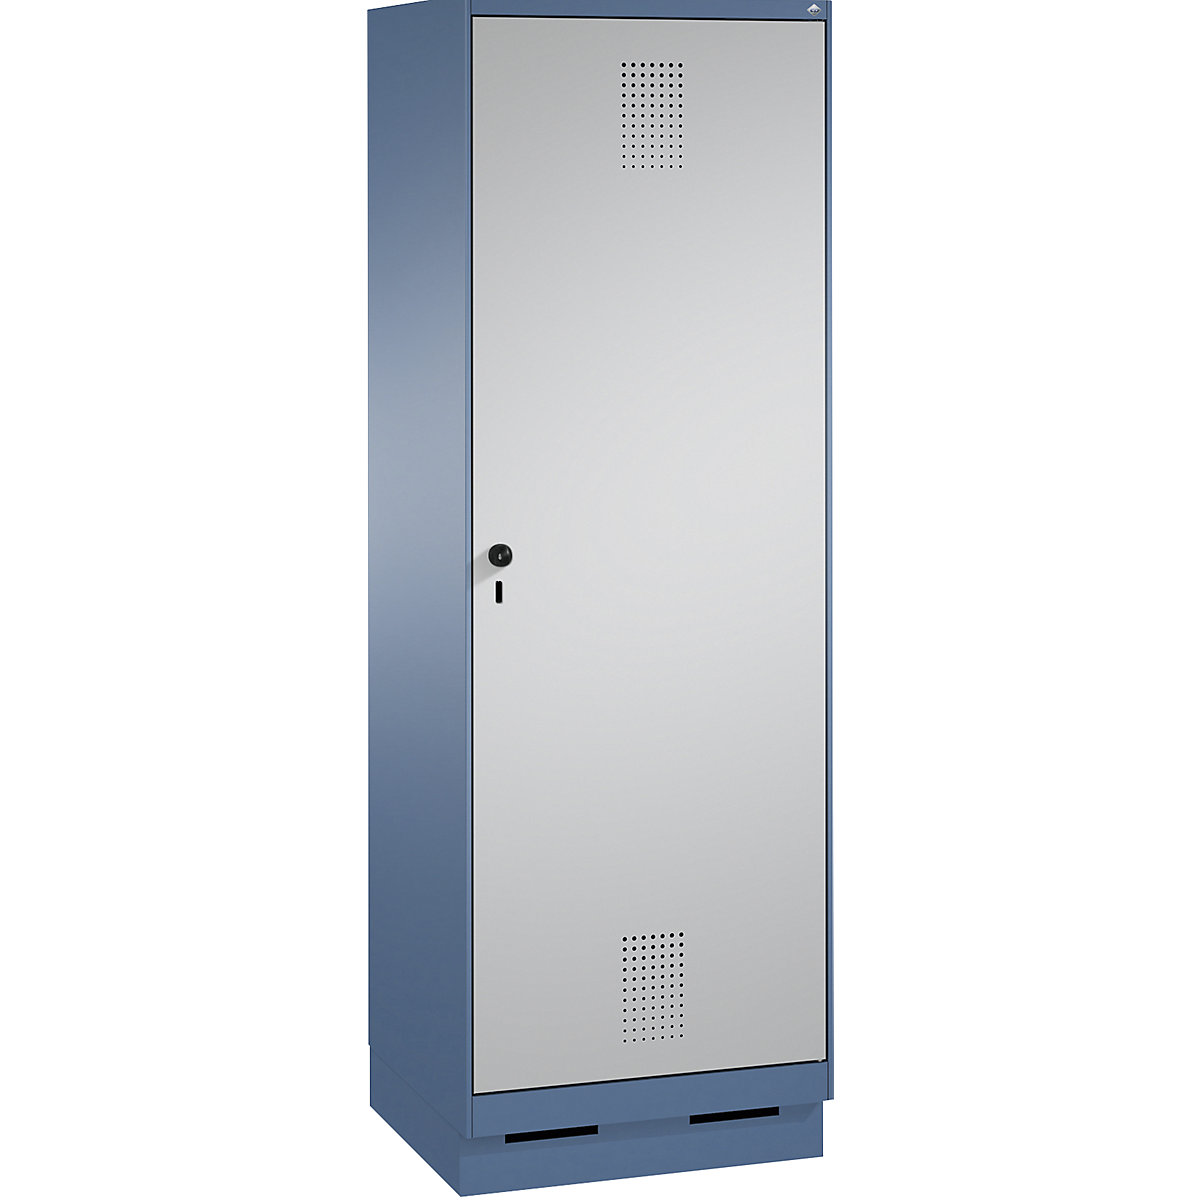 Szafa szatniowa EVOLO, jedne drzwi do 2 przedziałów, z cokołem – C+P, 2 przedziały, 1 drzwi, szer. przedziału 300 mm, niebiesko-mglista / biały aluminium-8